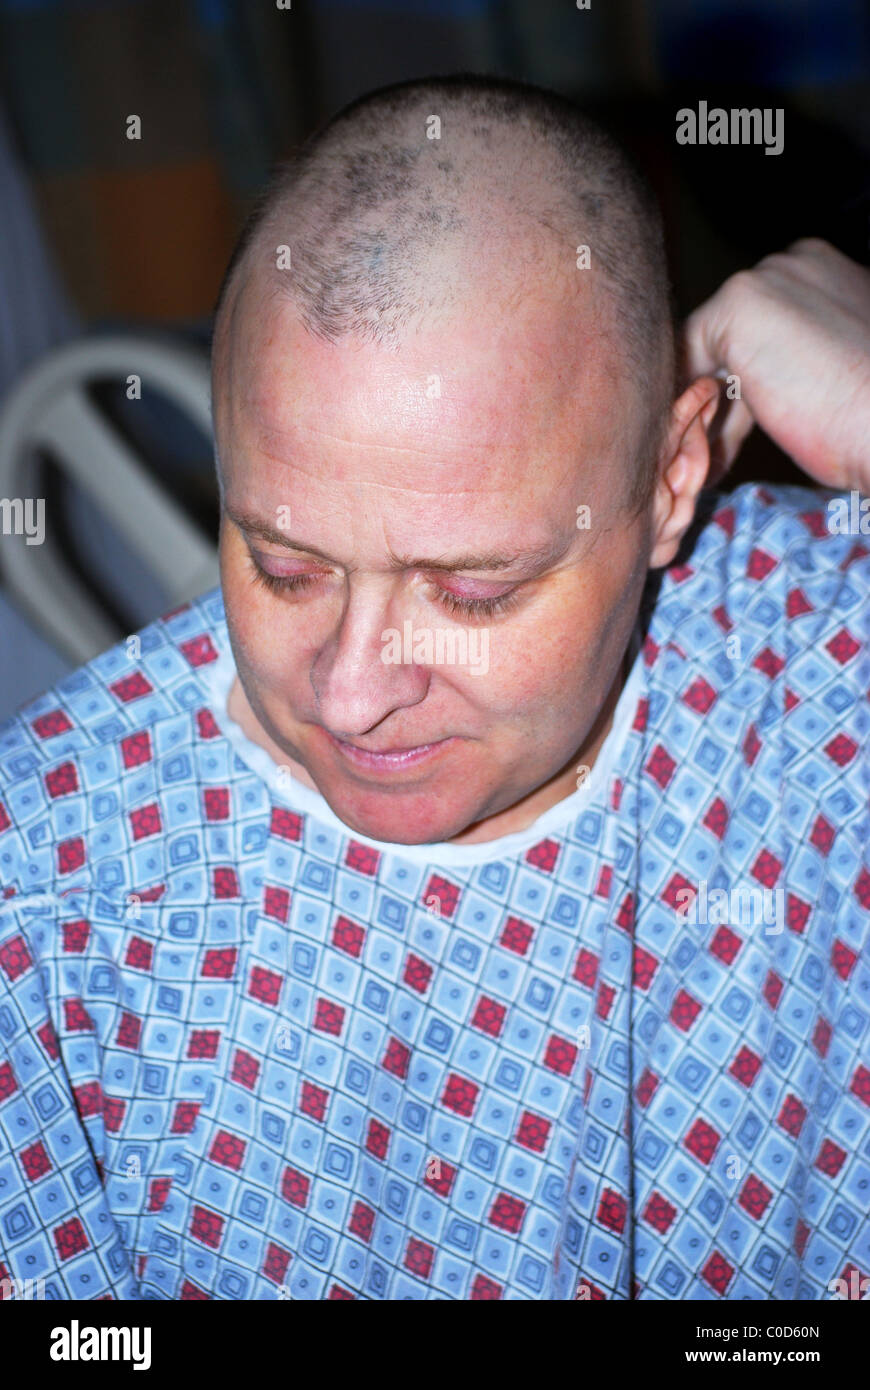 Mannlichen Krebspatienten Zeigt Haarausfall Nach Einer Chemotherapie Stockfotografie Alamy